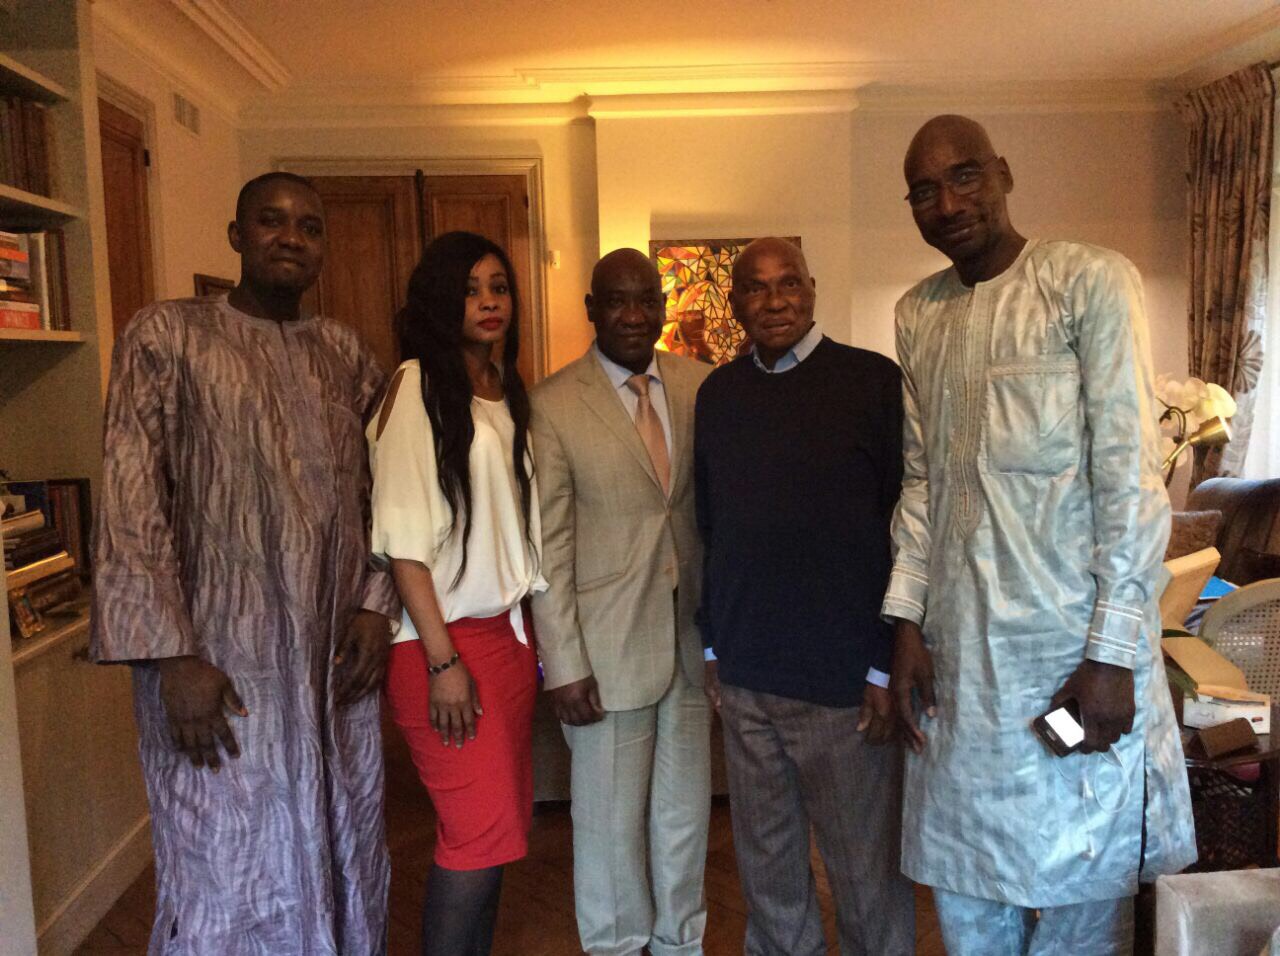 Les libéraux du Fouta sous la houlette du président Bocar Diop, ont rencontré le Président Abdoulaye Wade à Versailles